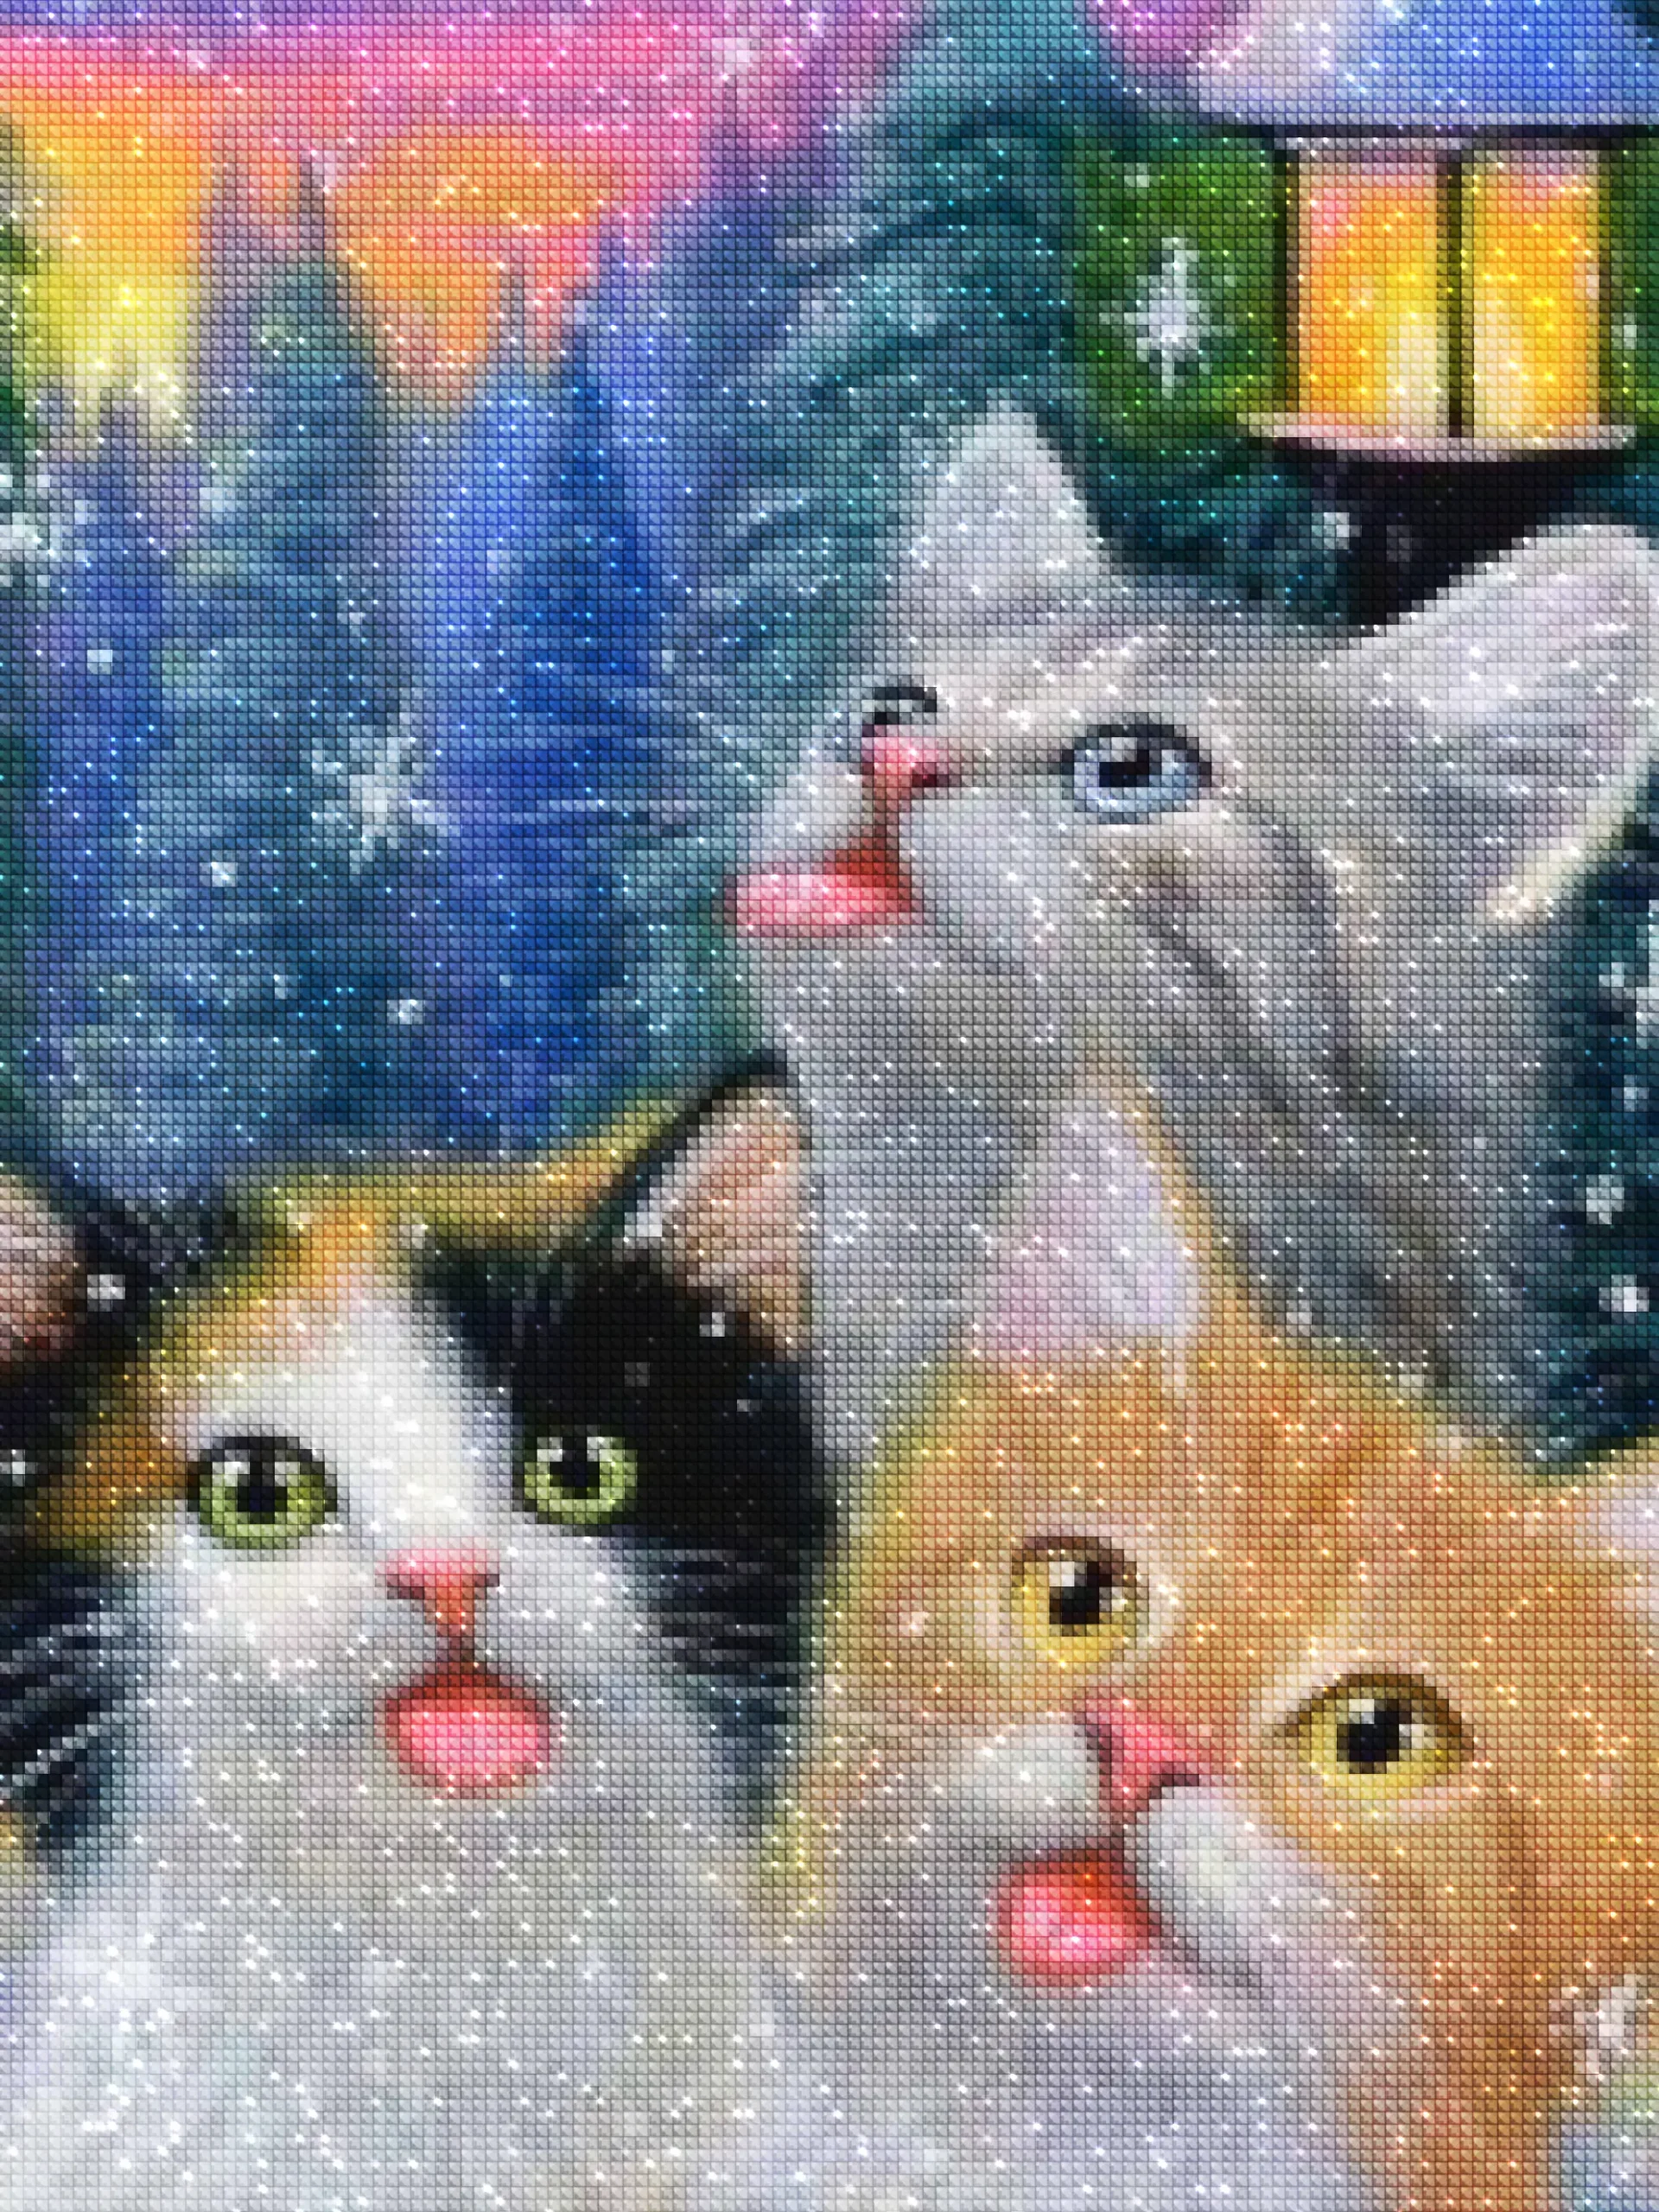 diamantes-mago-kits-de-pintura-de-diamantes-Animales-Gato-Lindos gatitos y copos de nieve-diamantes.webp